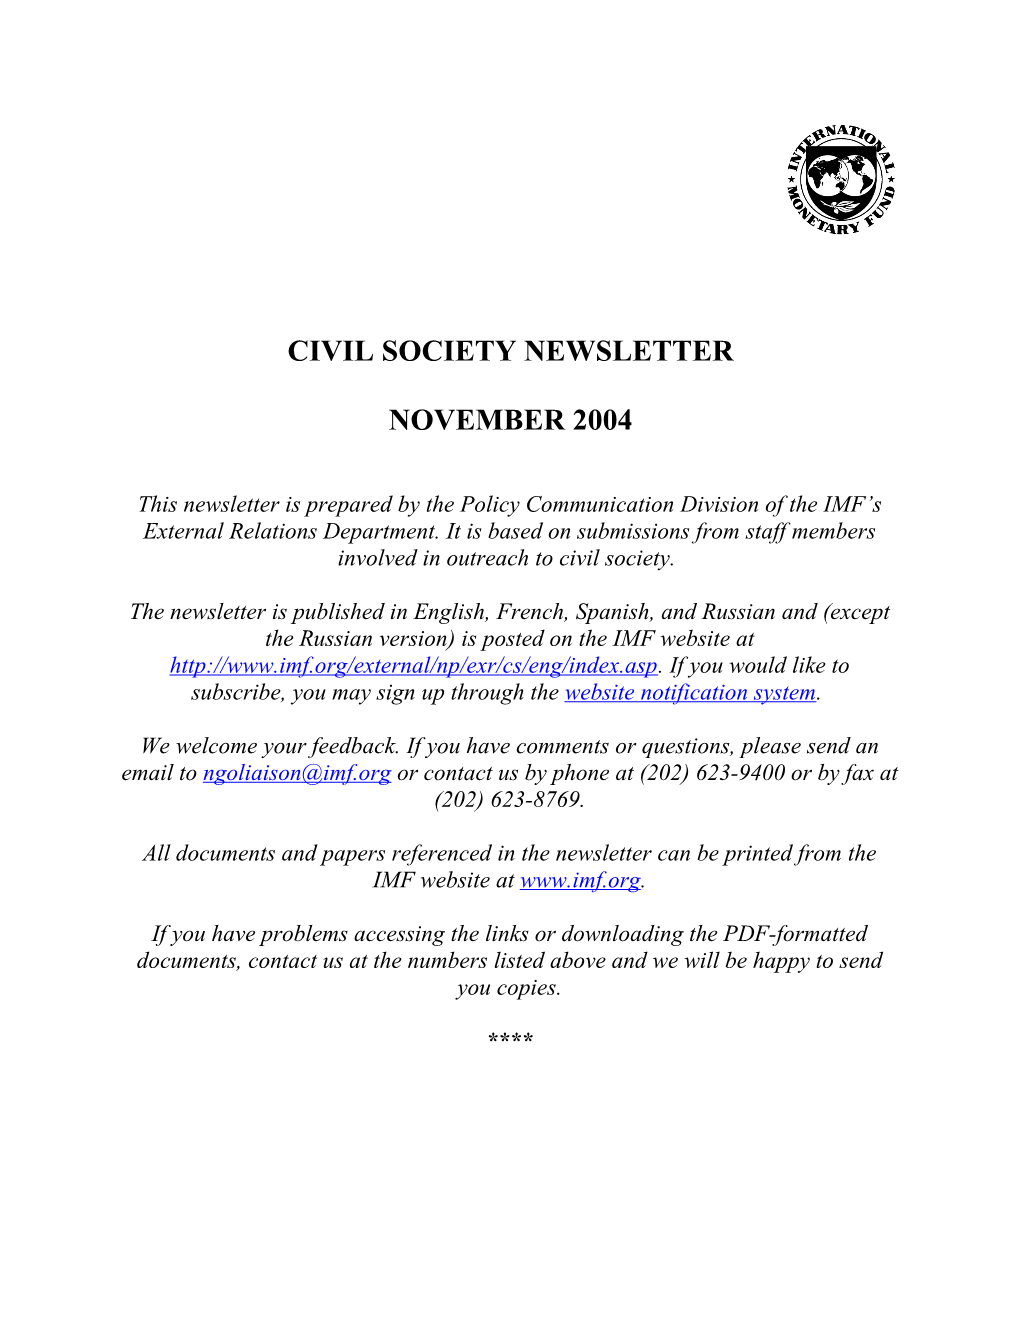 Civil Society Newsletter